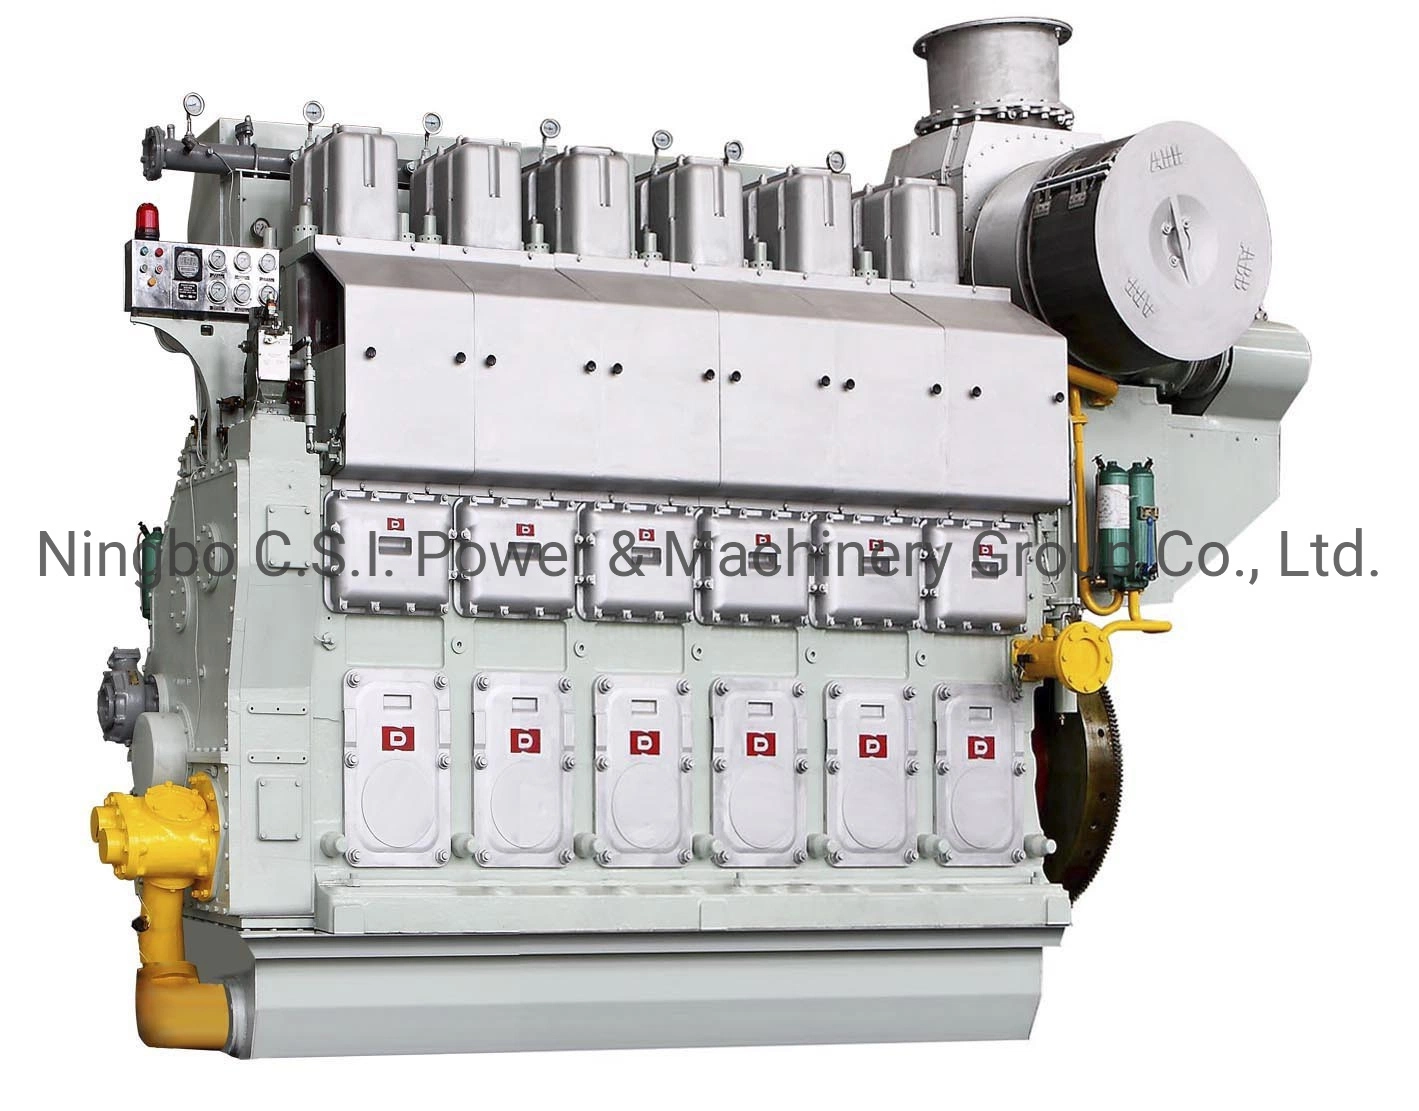 Velocidad media de la serie DN330 con motores marinos diesel Hfo, Gas Natural, de doble combustible, piezas de repuesto del motor